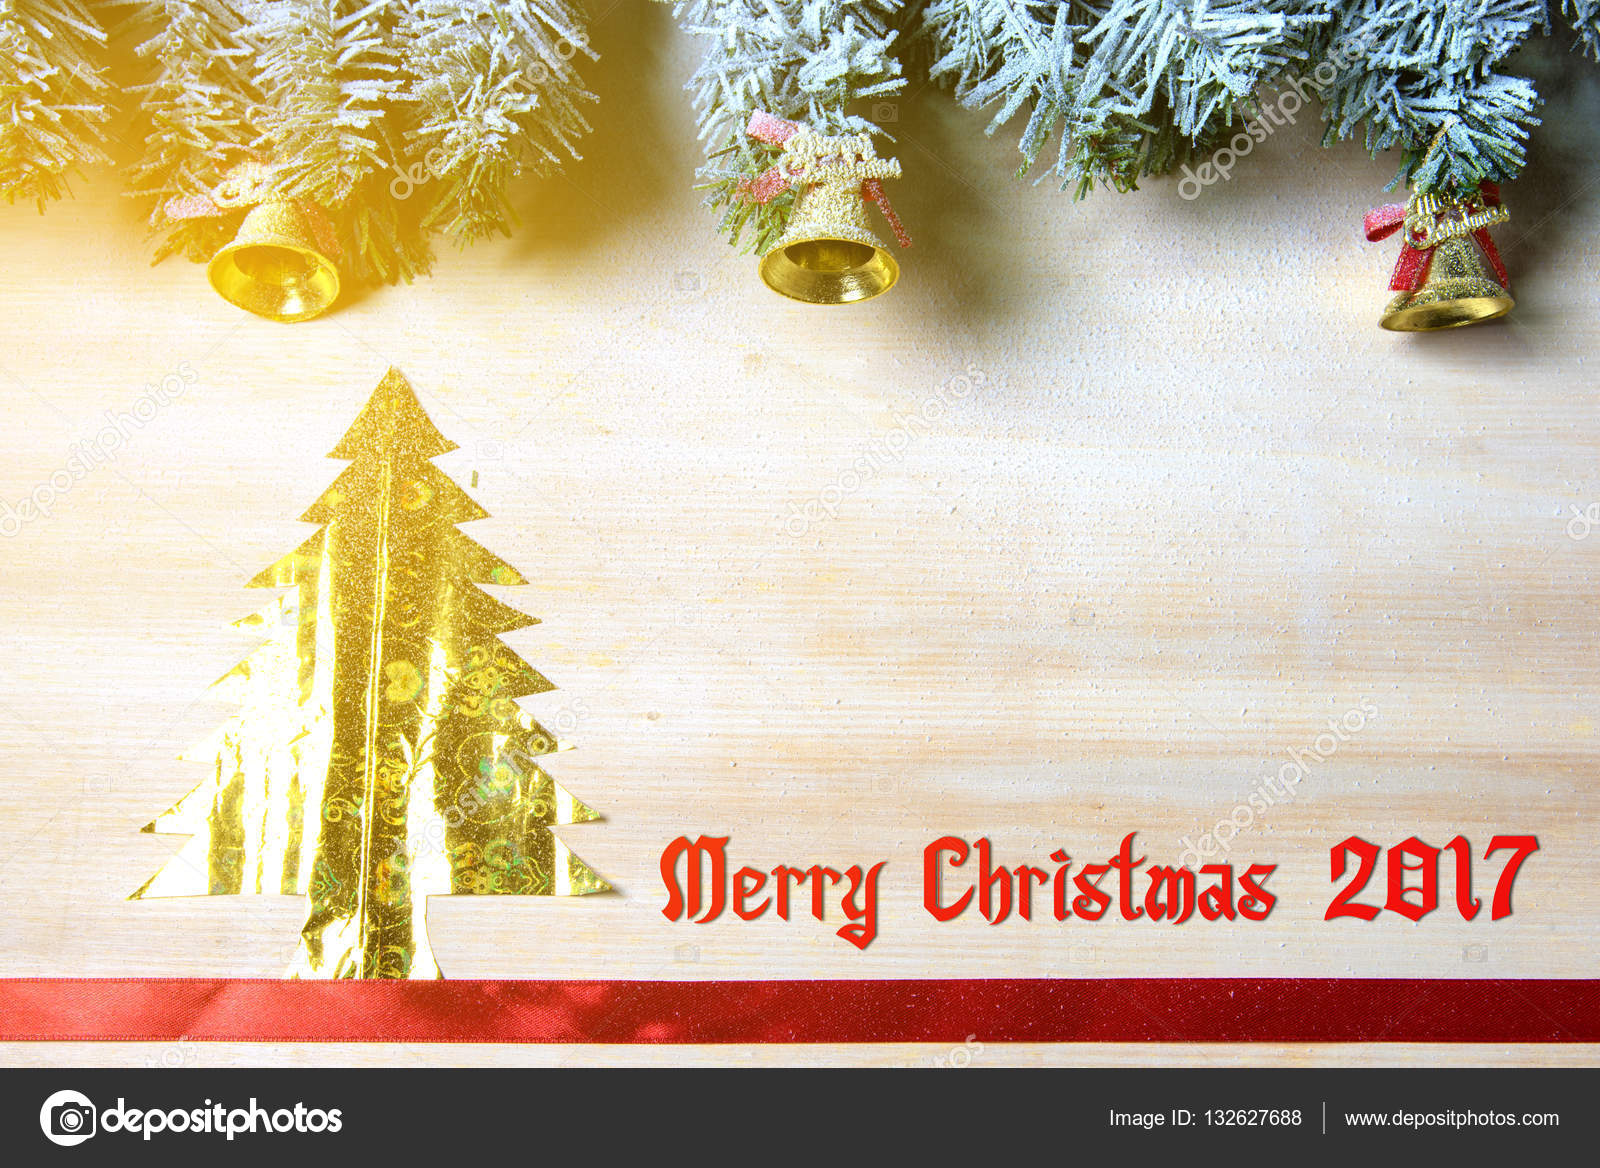 Holz Hintergrund Und Baum Weihnachten Hintergrund Weihnachten Stockfotografie Lizenzfreie Fotos C Somchaichoosiri Depositphotos